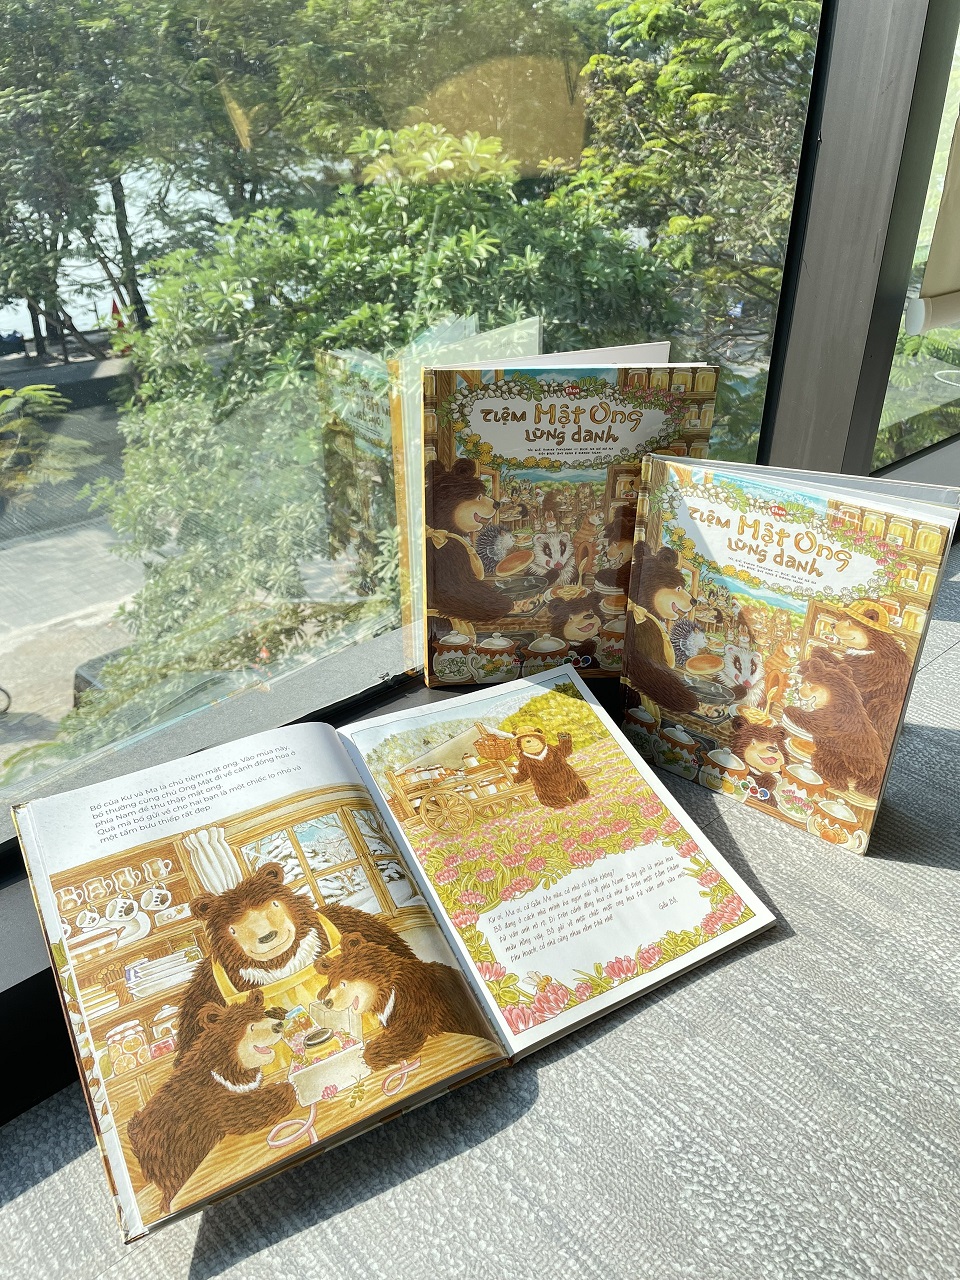 Tiệm Mật Ong lừng danh - Tranh truyện Ehon Nhật Bản PHÁT TRIỂN TƯ DUY cho trẻ trên 2 tuổi - Mọt sách Mogu